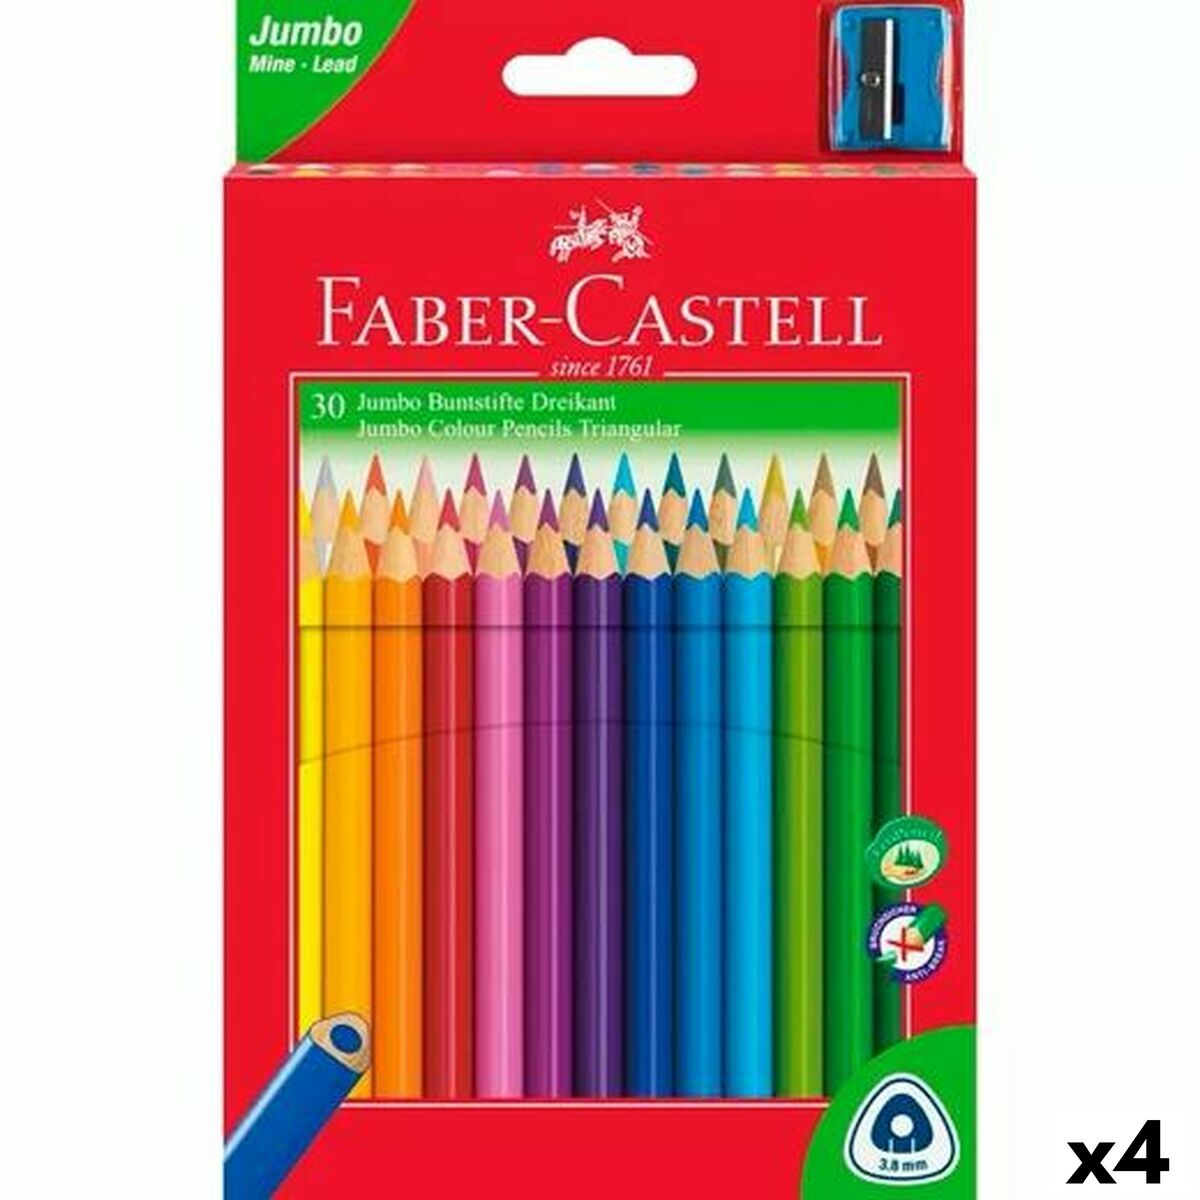 Faber-castell-rotuladores De Colores Aleatorios, 1 Piezas